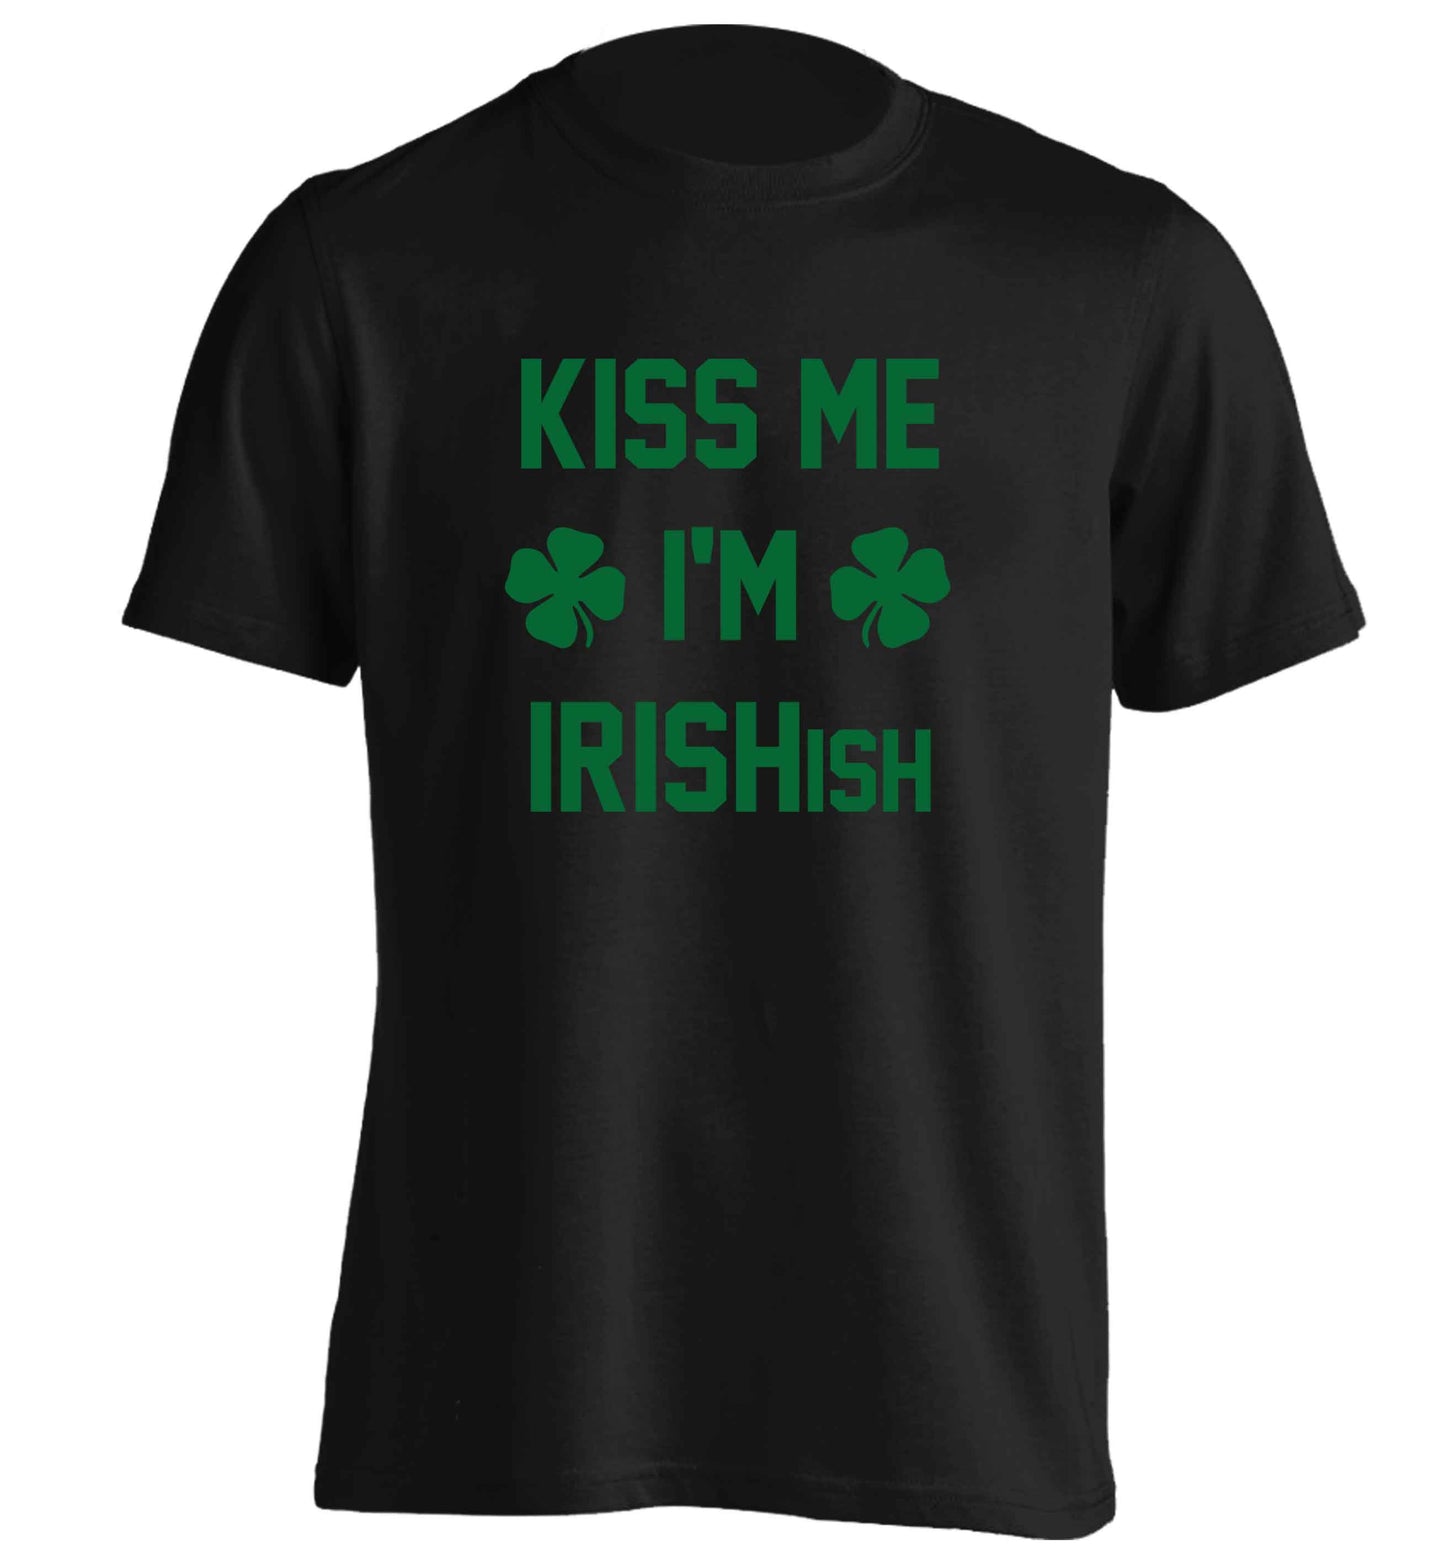 Kiss me I'm Irishish adults unisex black Tshirt 2XL